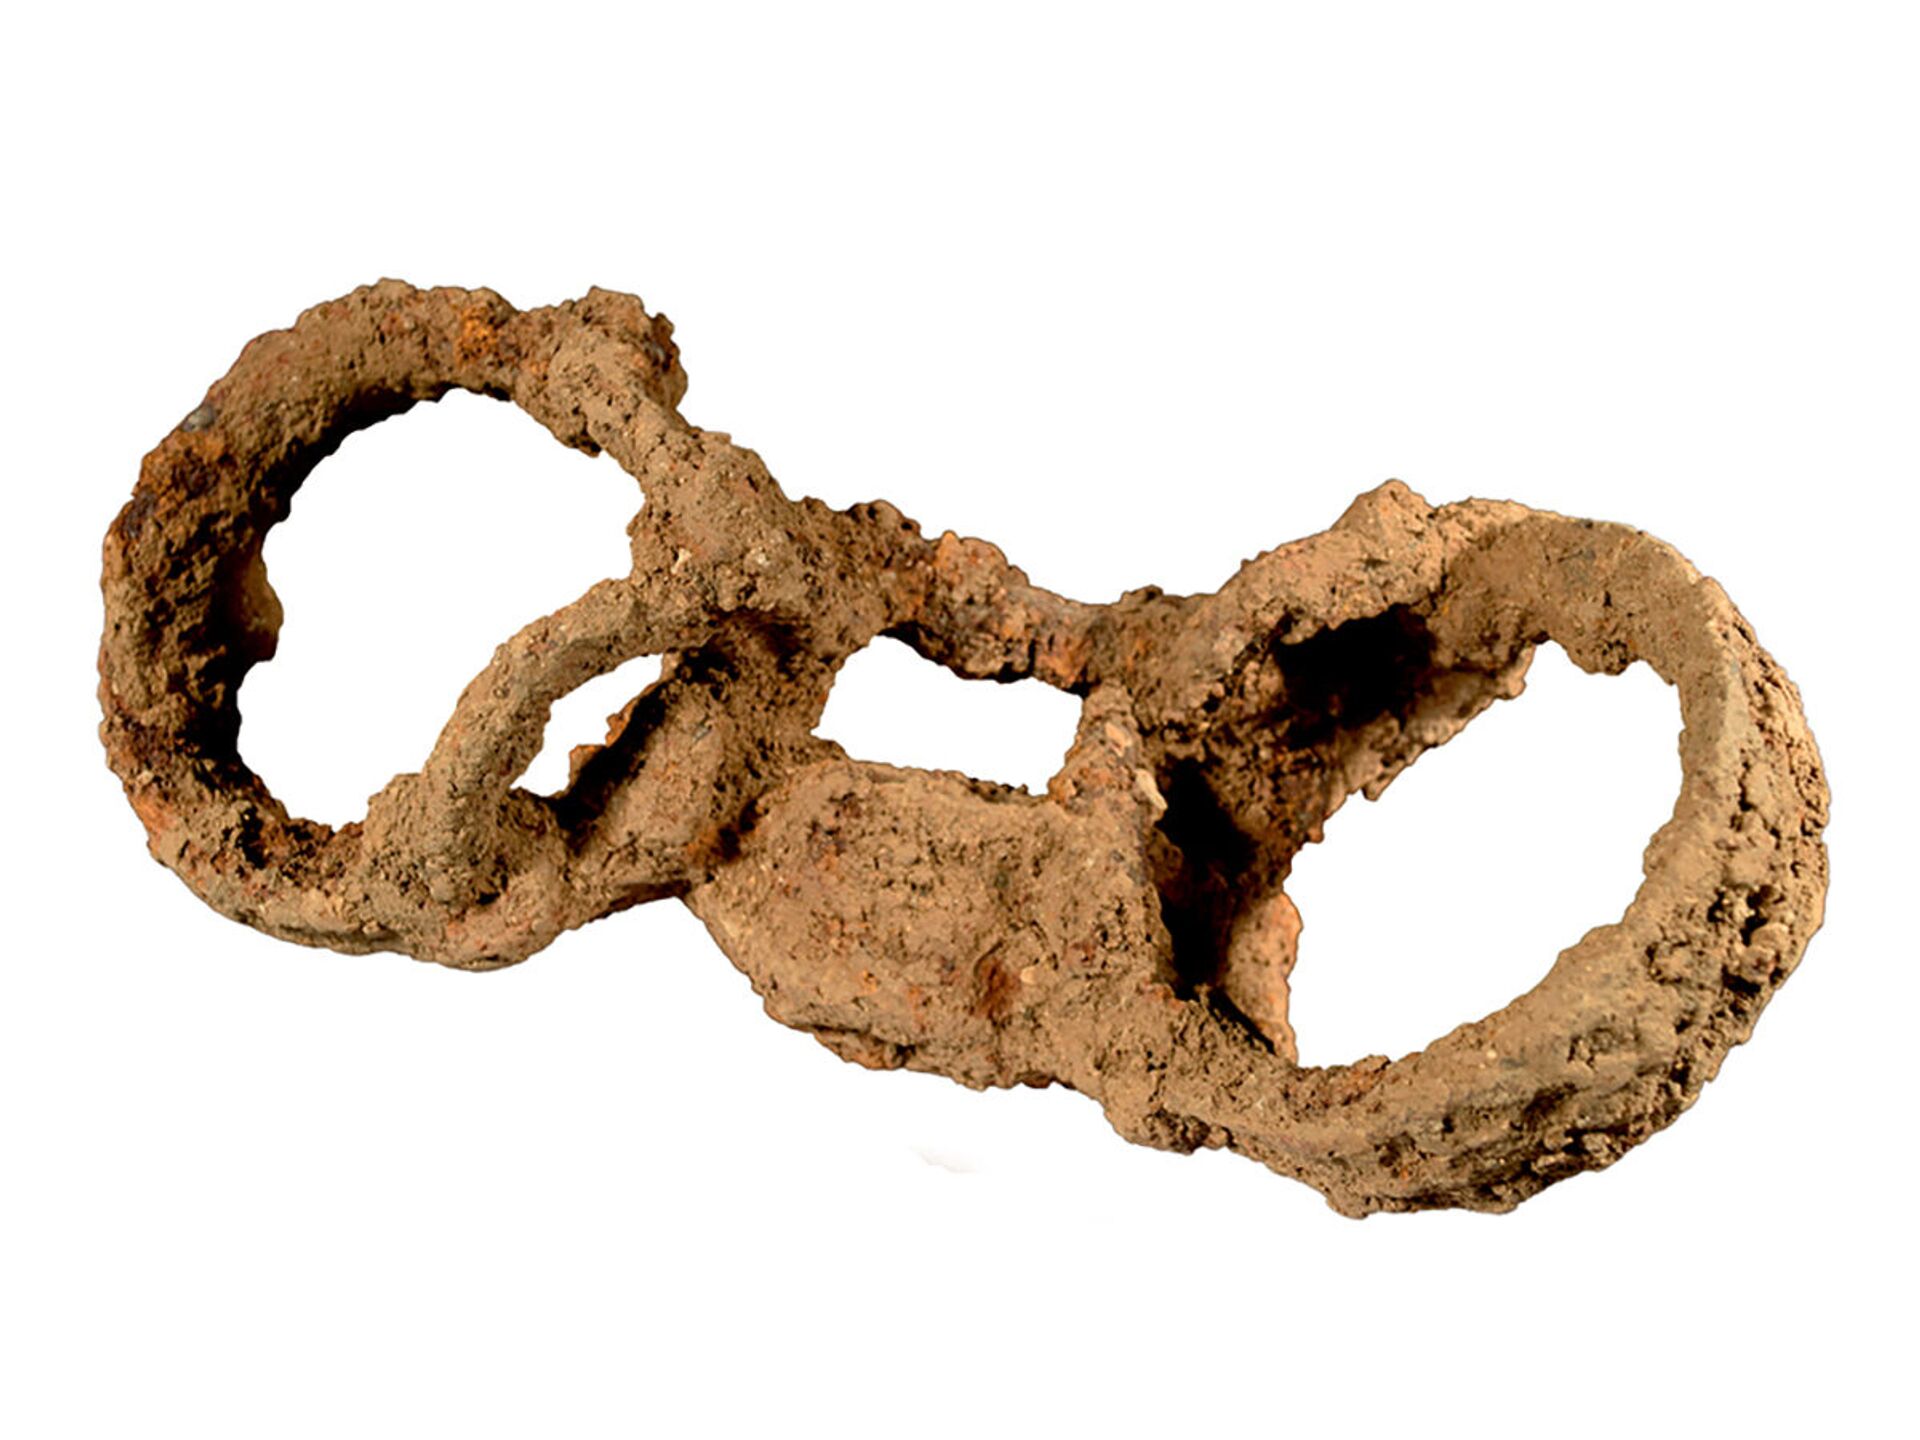 Esqueleto algemado de 1.800 anos revela rara evidência da escravidão romana na Grã-Bretanha (FOTO) - Sputnik Brasil, 1920, 07.06.2021